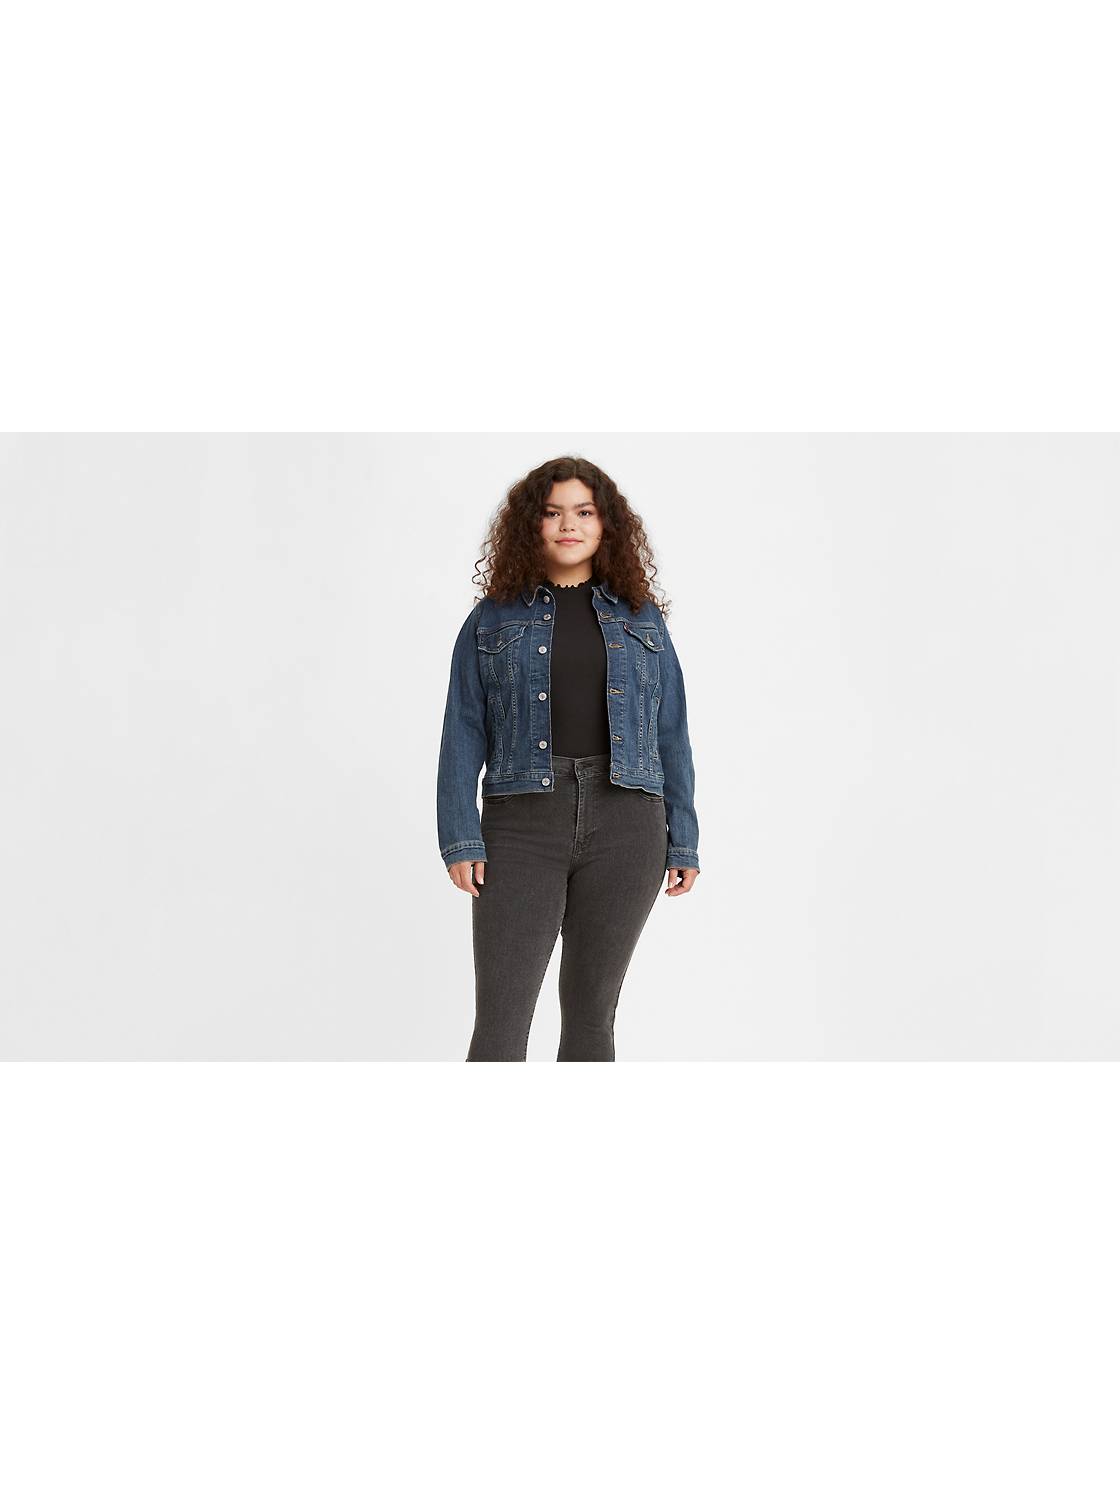 Shop Women's Jackets, Outerwear & Coats Levi's® US